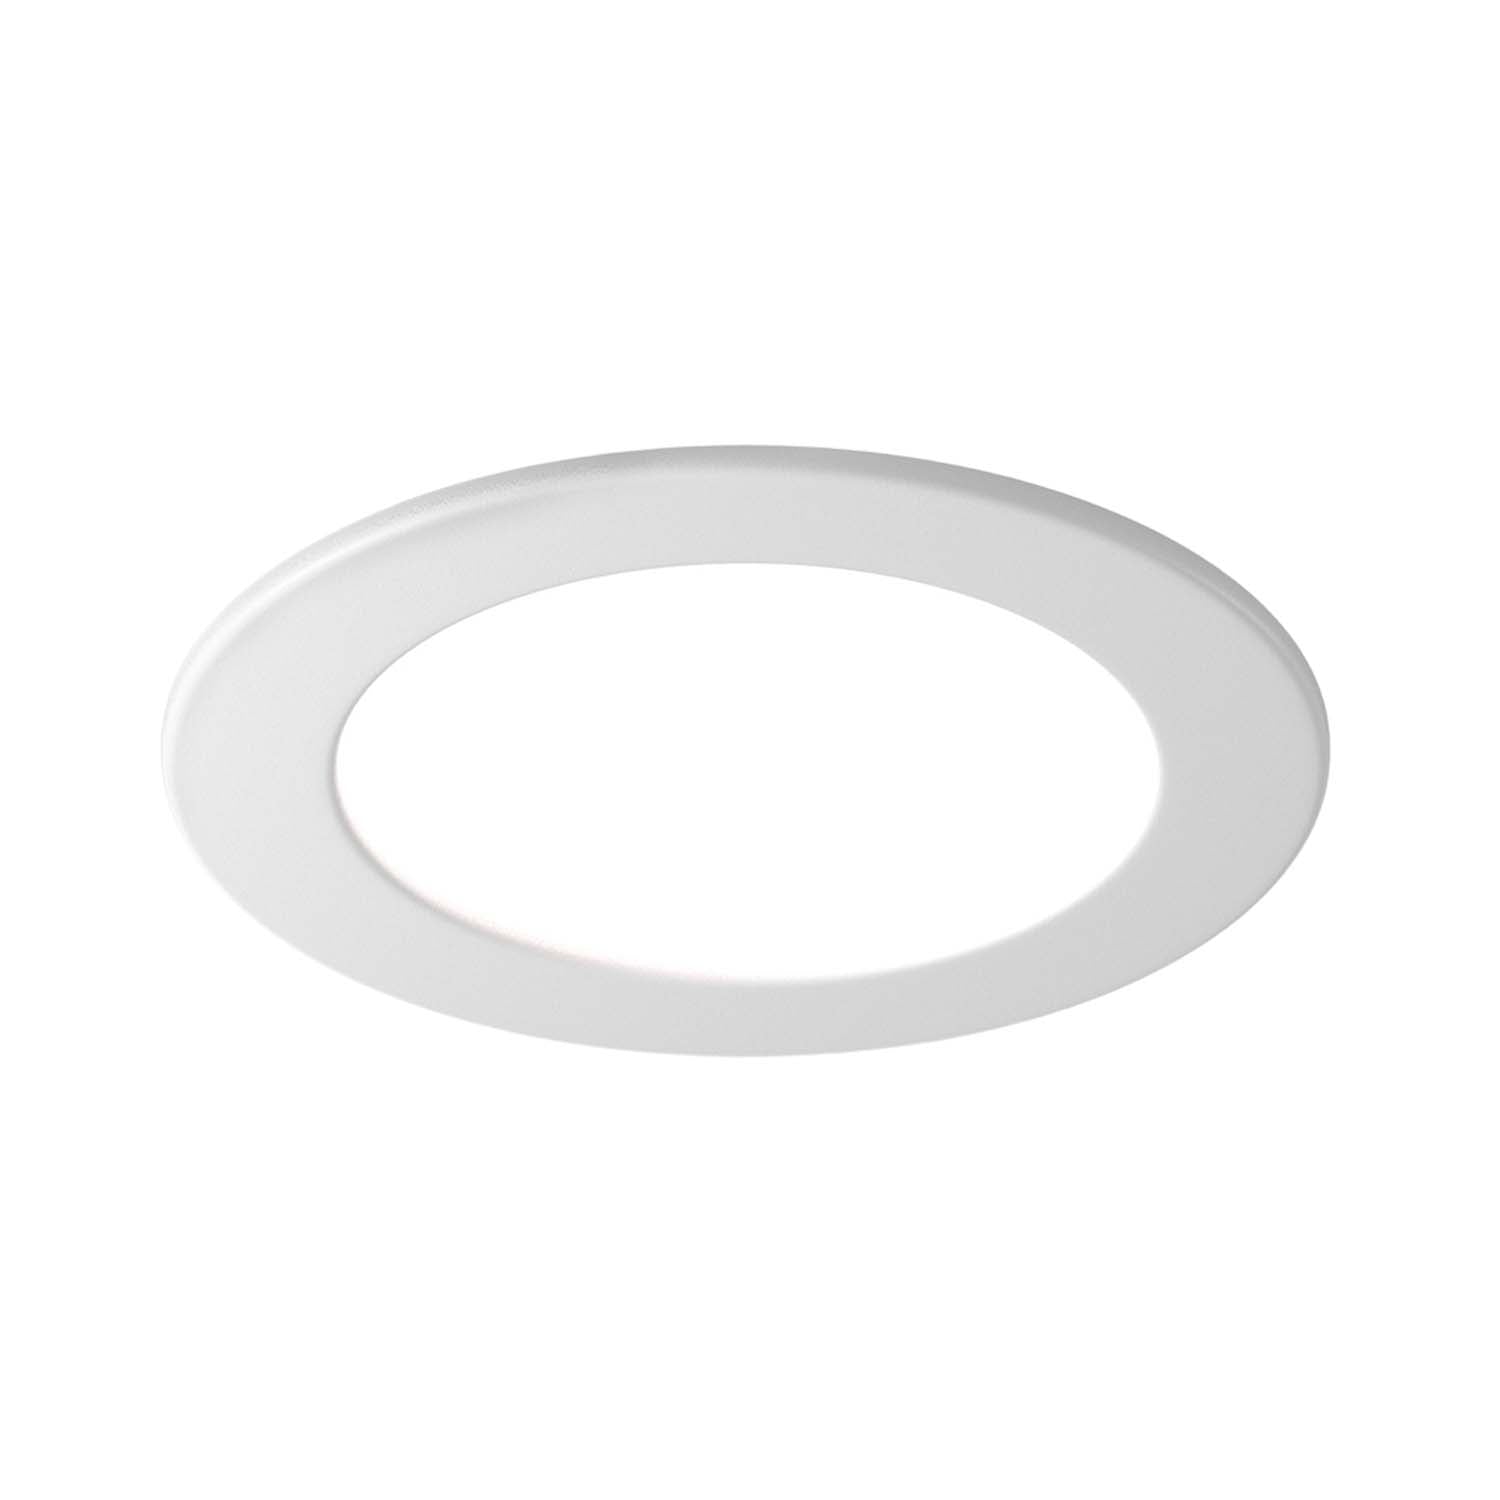 STOCKTON – Weißer runder Einbaustrahler, Durchmesser 75 mm